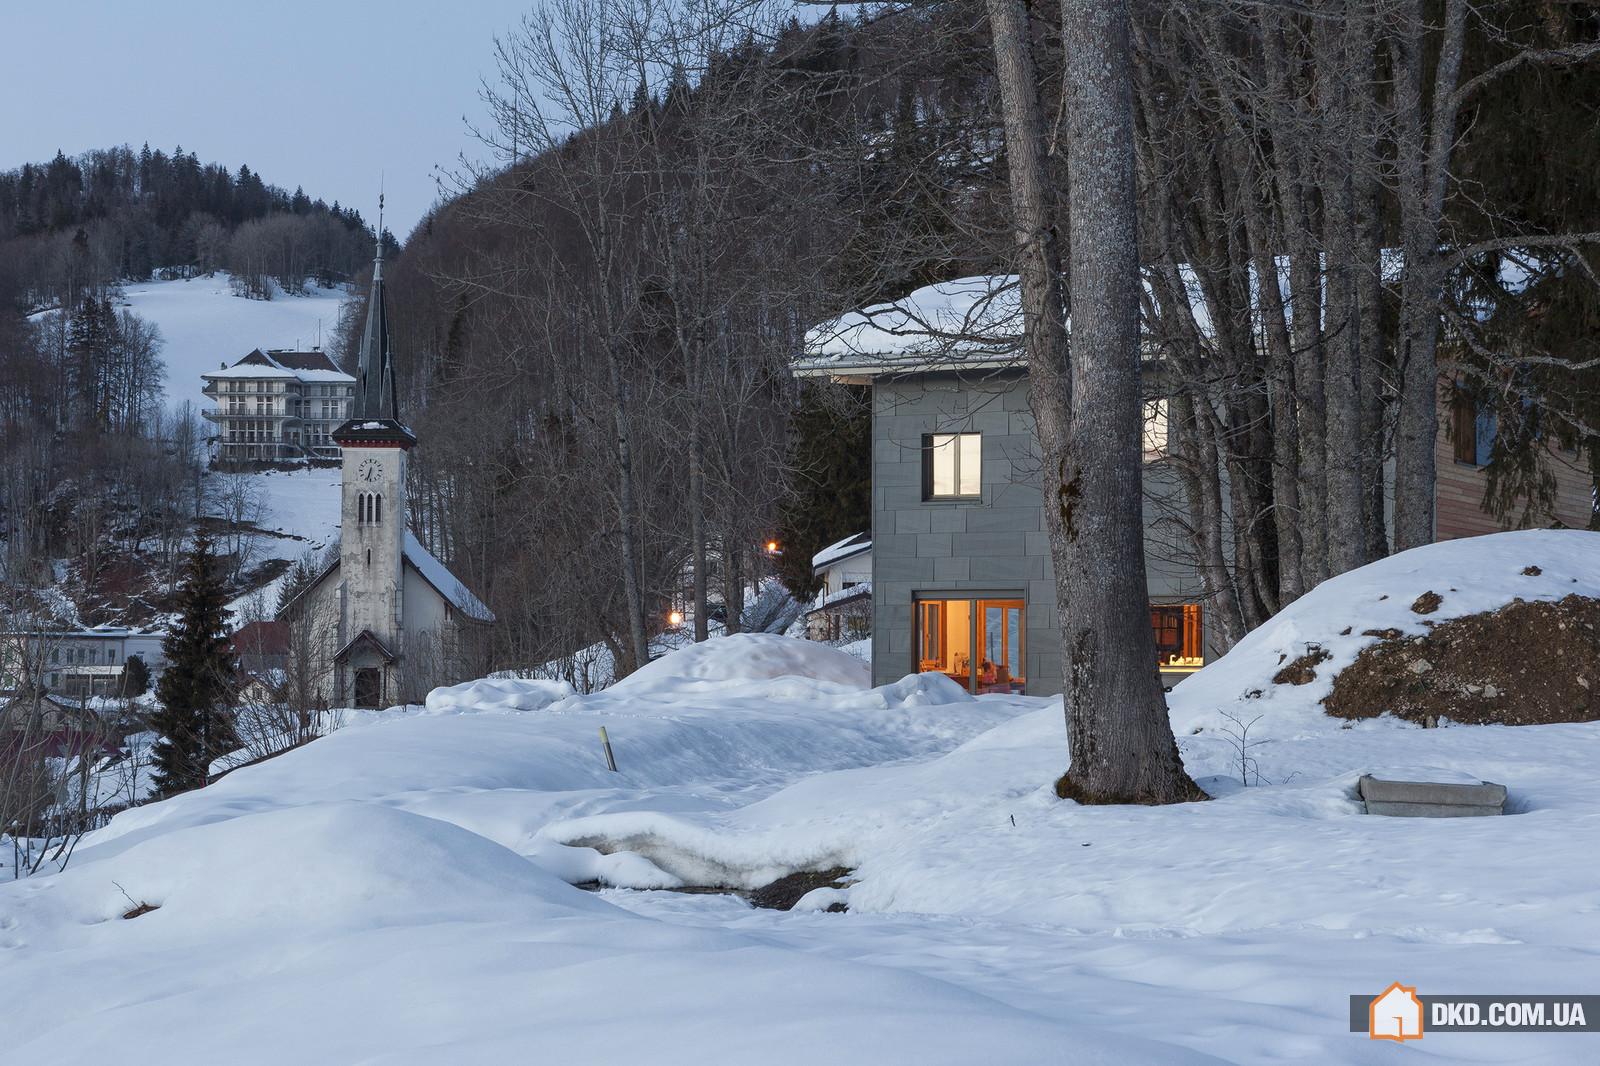 Дом для семьи с детьми в горах Швейцарии